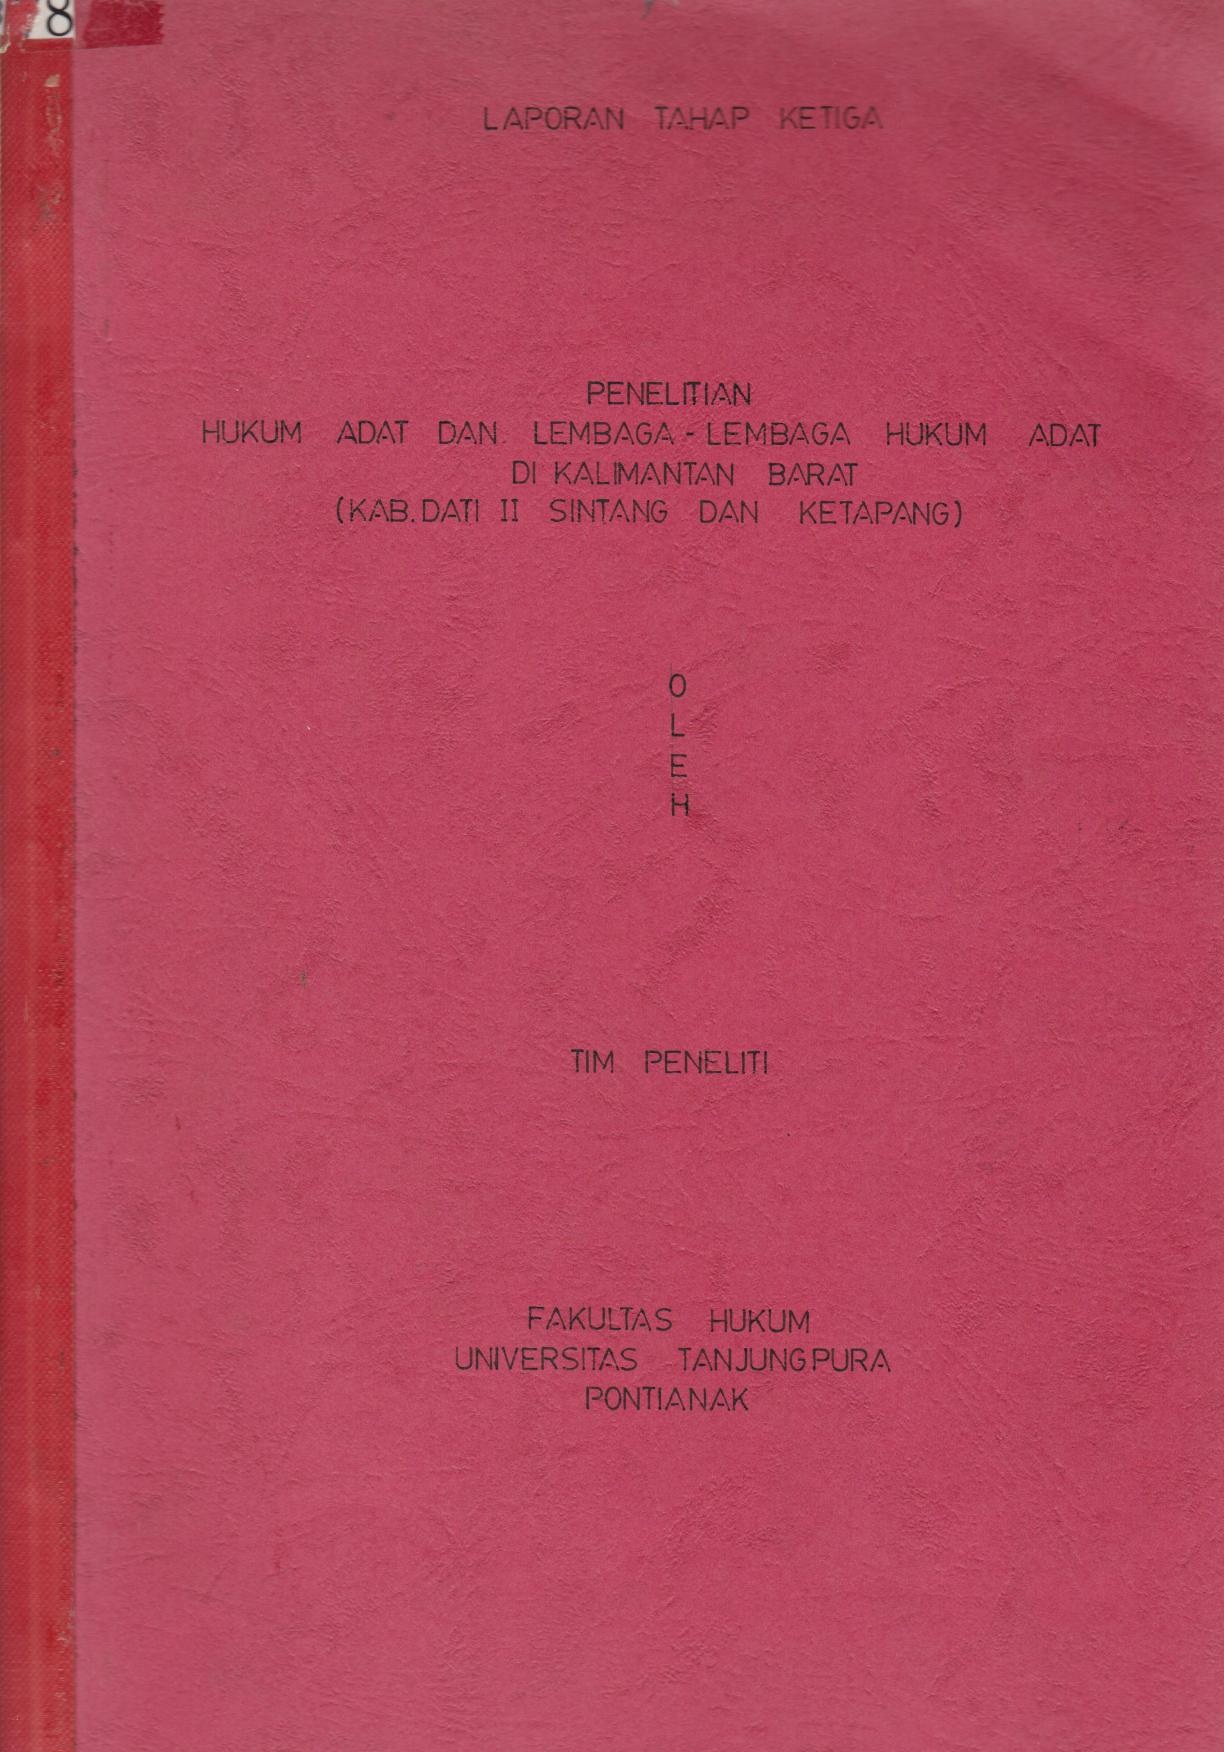 Penelitian Hukum Adat Dan Lembaga - Lembaga Hukum Adat Di Kalimantan Barat (Kab.Dati II SIntang Dan Ketapang)